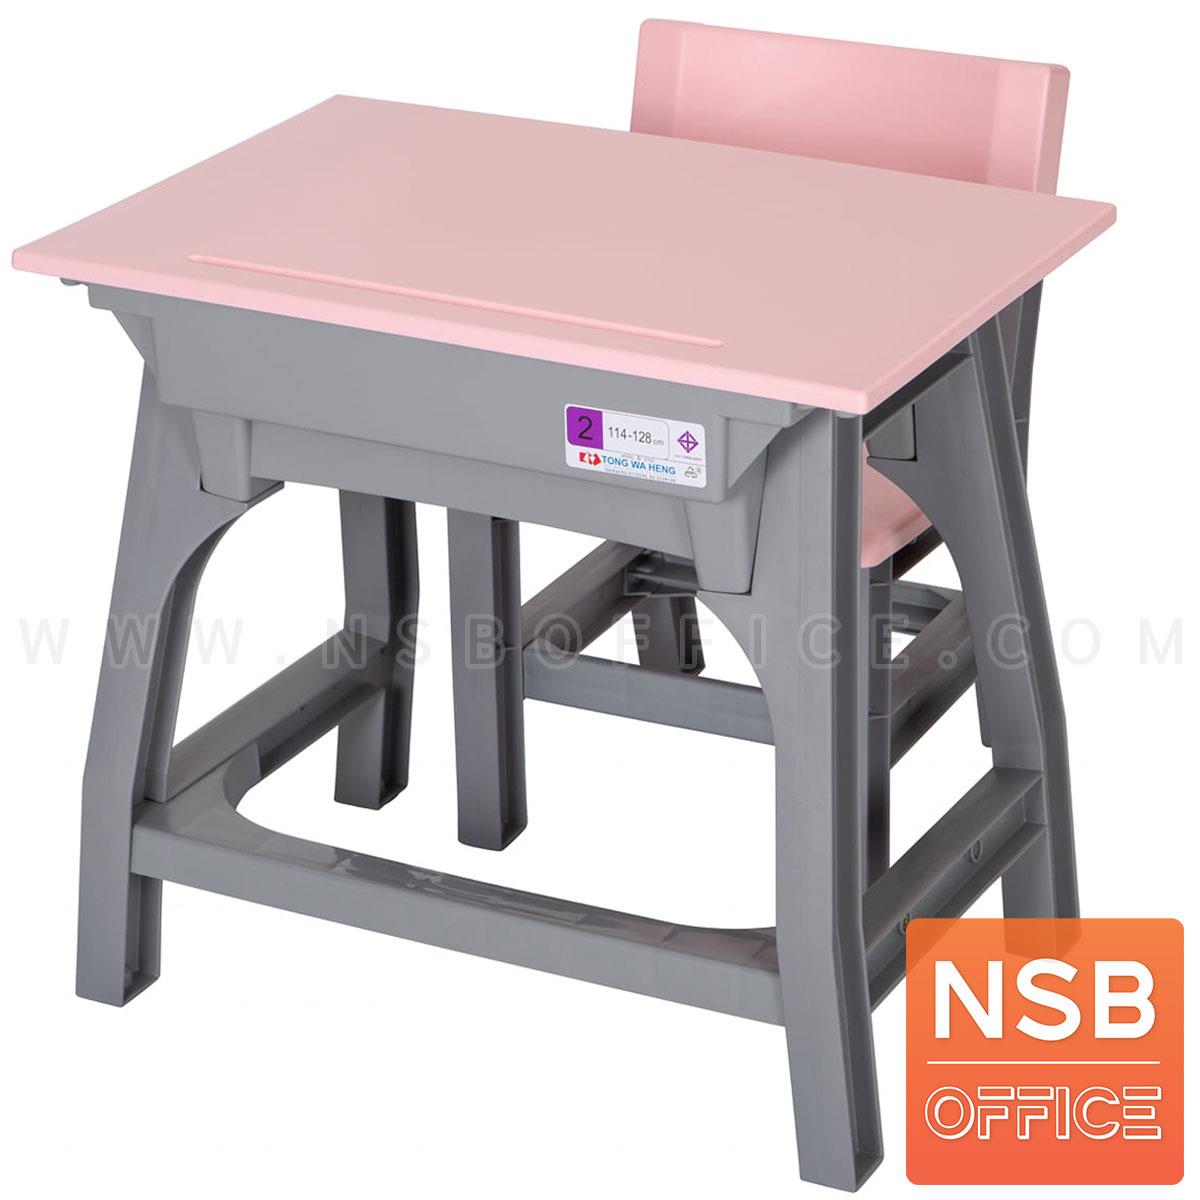 A17A036:ชุดโต๊ะและเก้าอี้นักเรียน รุ่น Absolute (แอ็ปโซลูต)  ระดับชั้นอนุบาล ขาพลาสติก